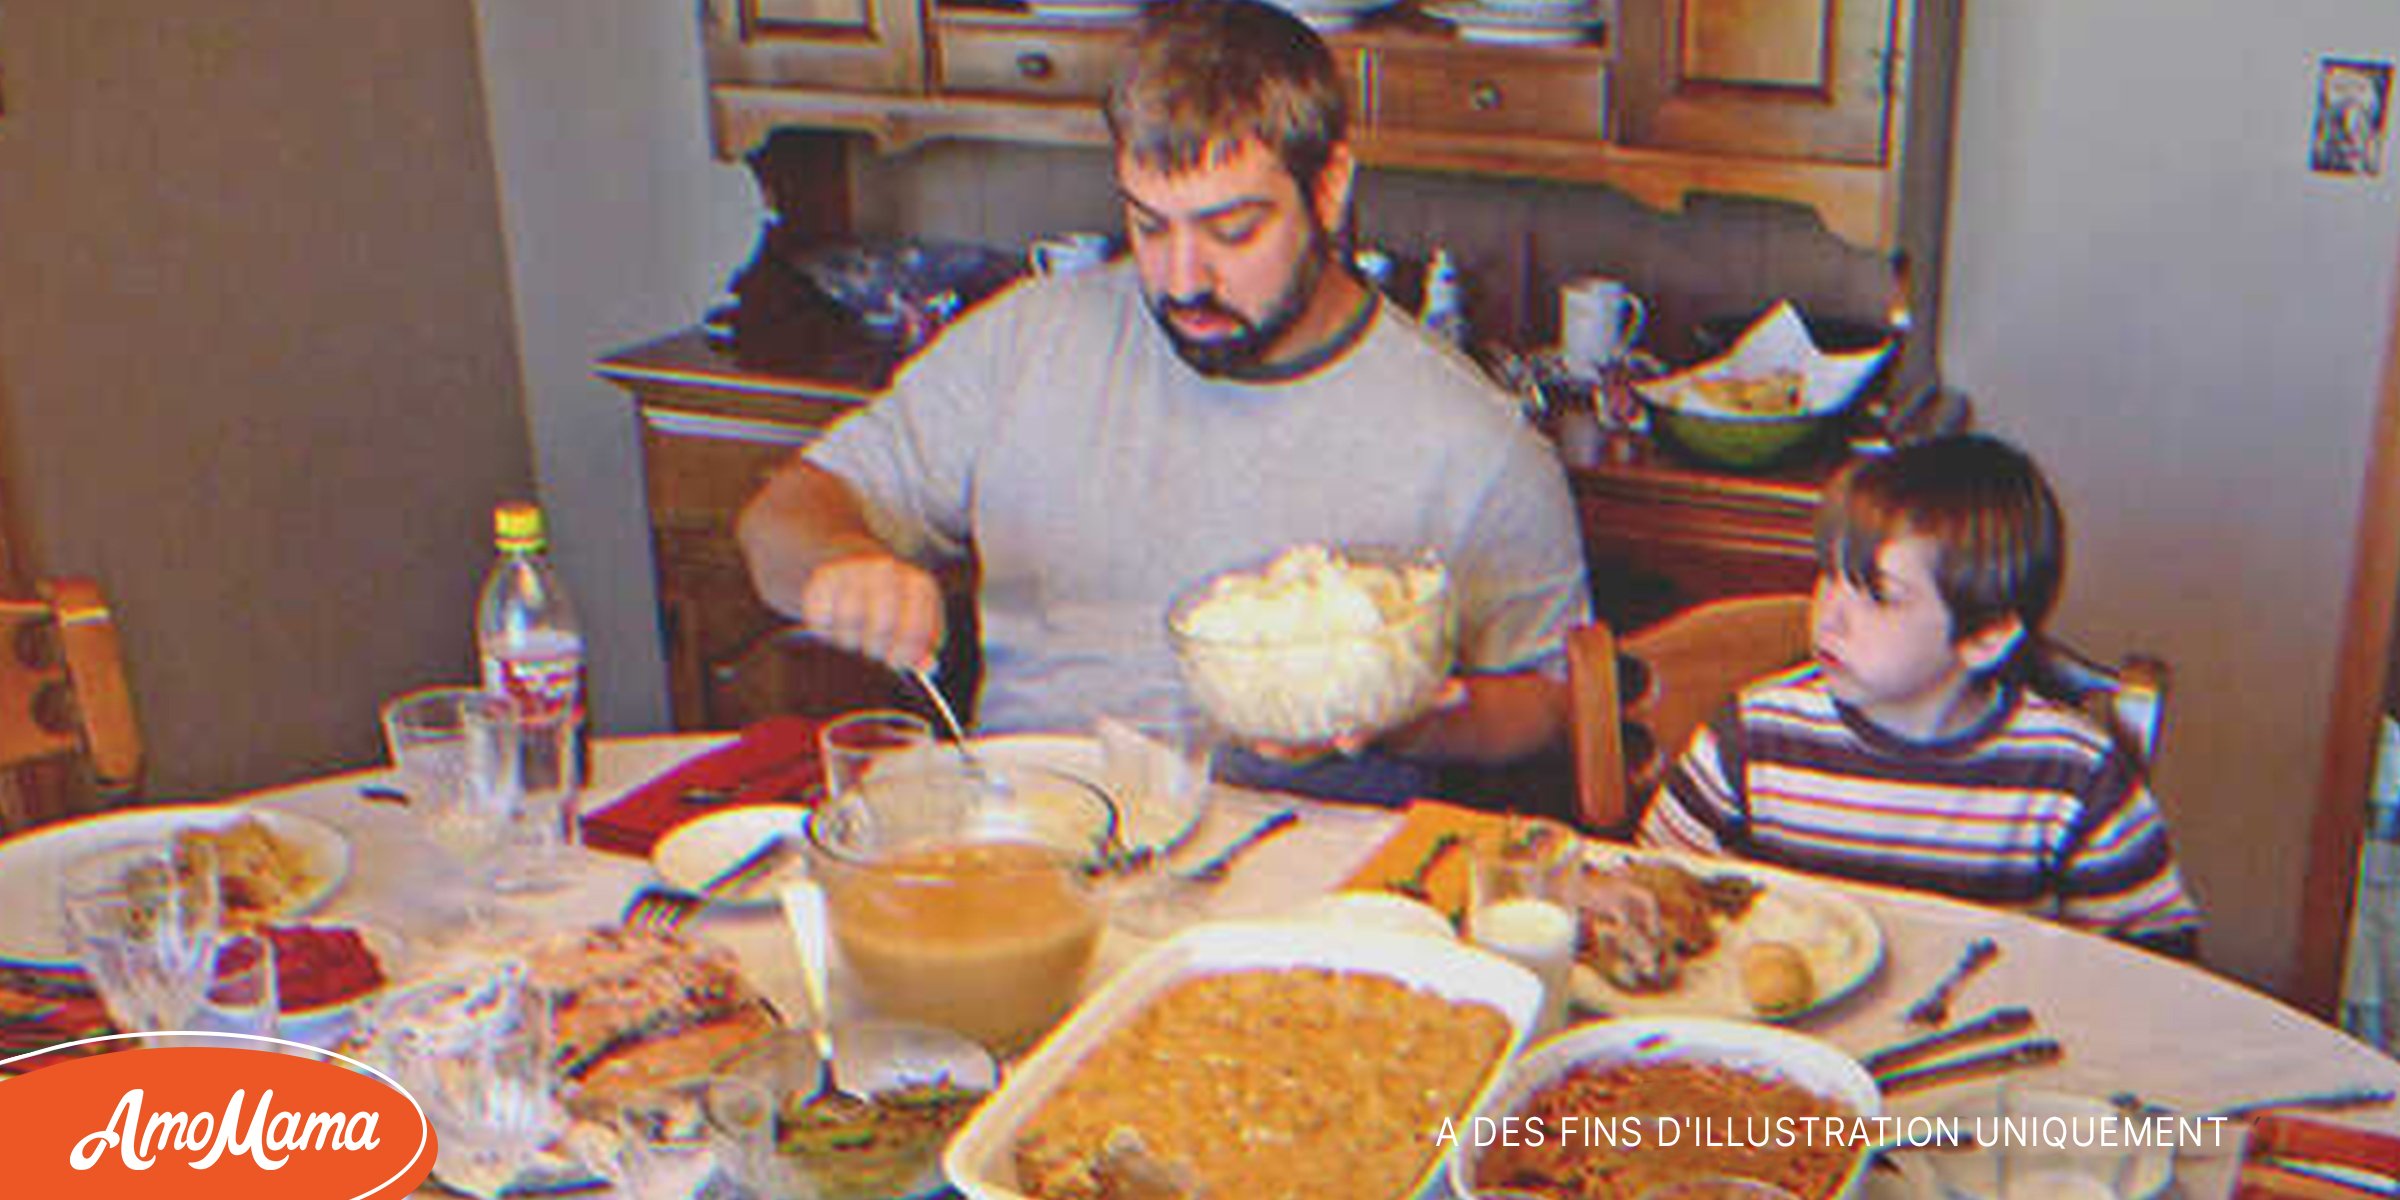 Un homme seul partage une dinde avec un garçon qui n’a pas de chaussures, un an plus tard, ils fêtent Thanksgiving en famille – Histoire du jour